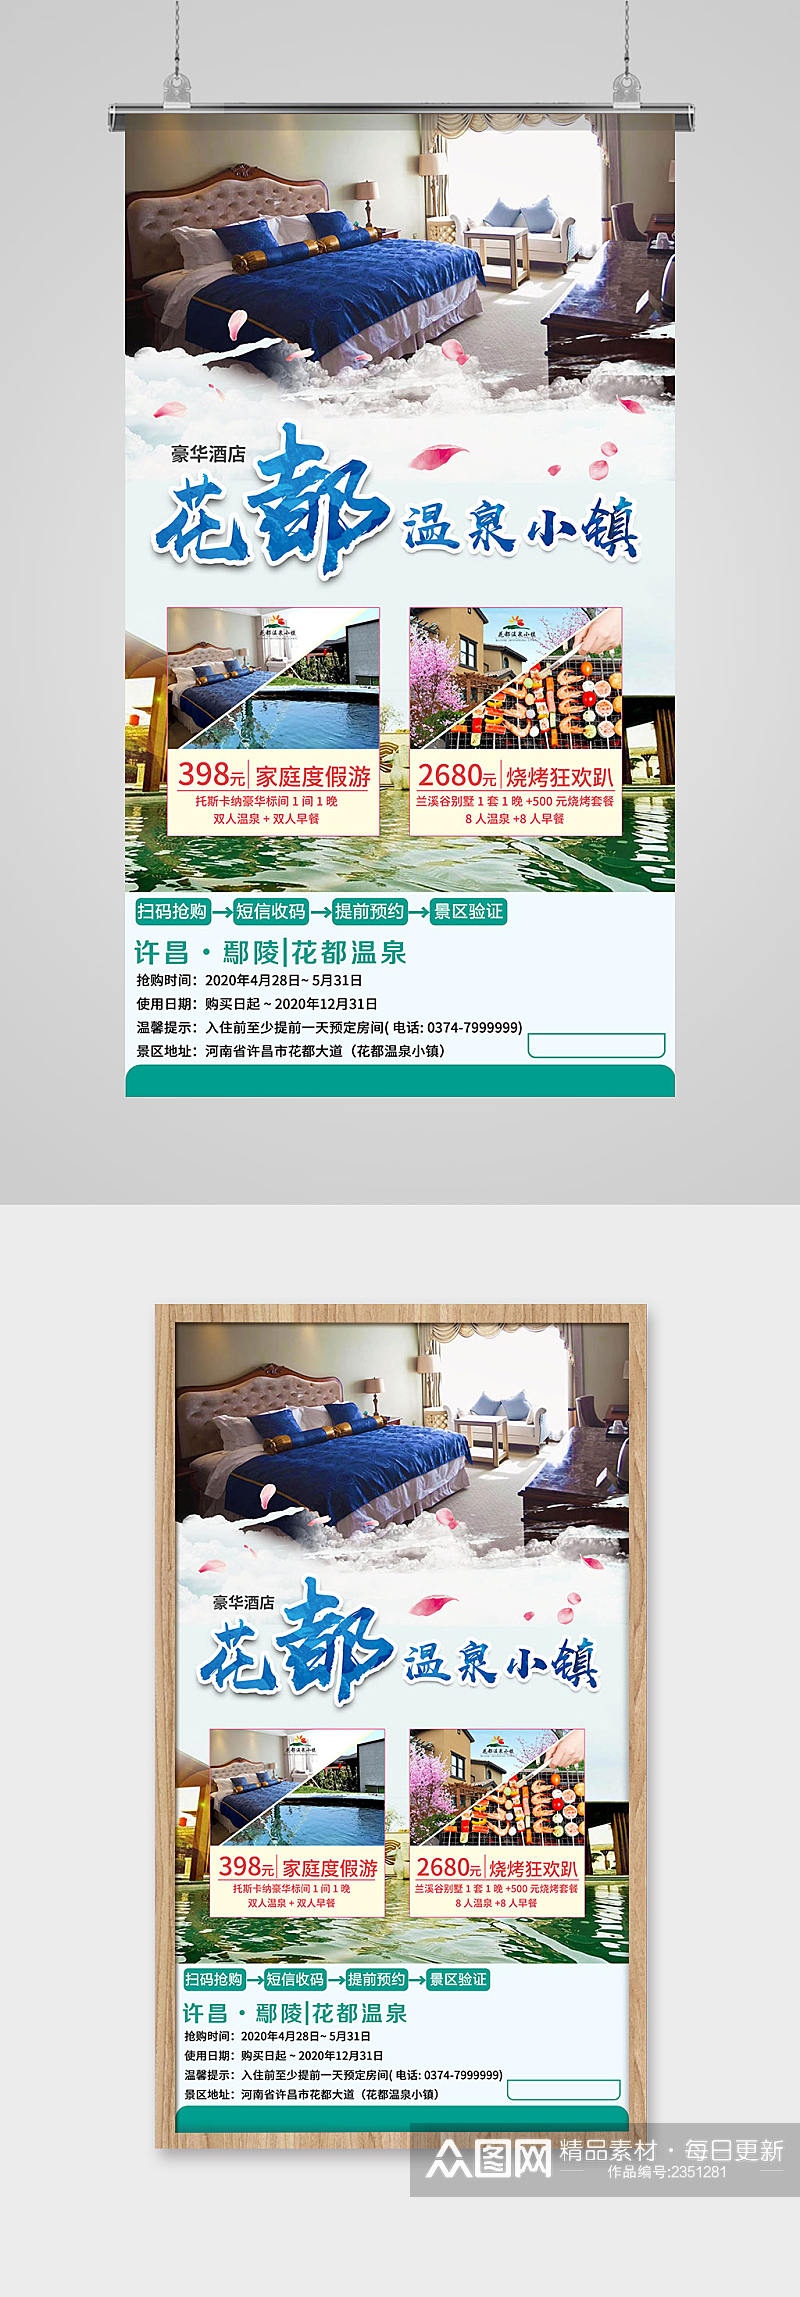 温泉酒店旅游宣传海报素材